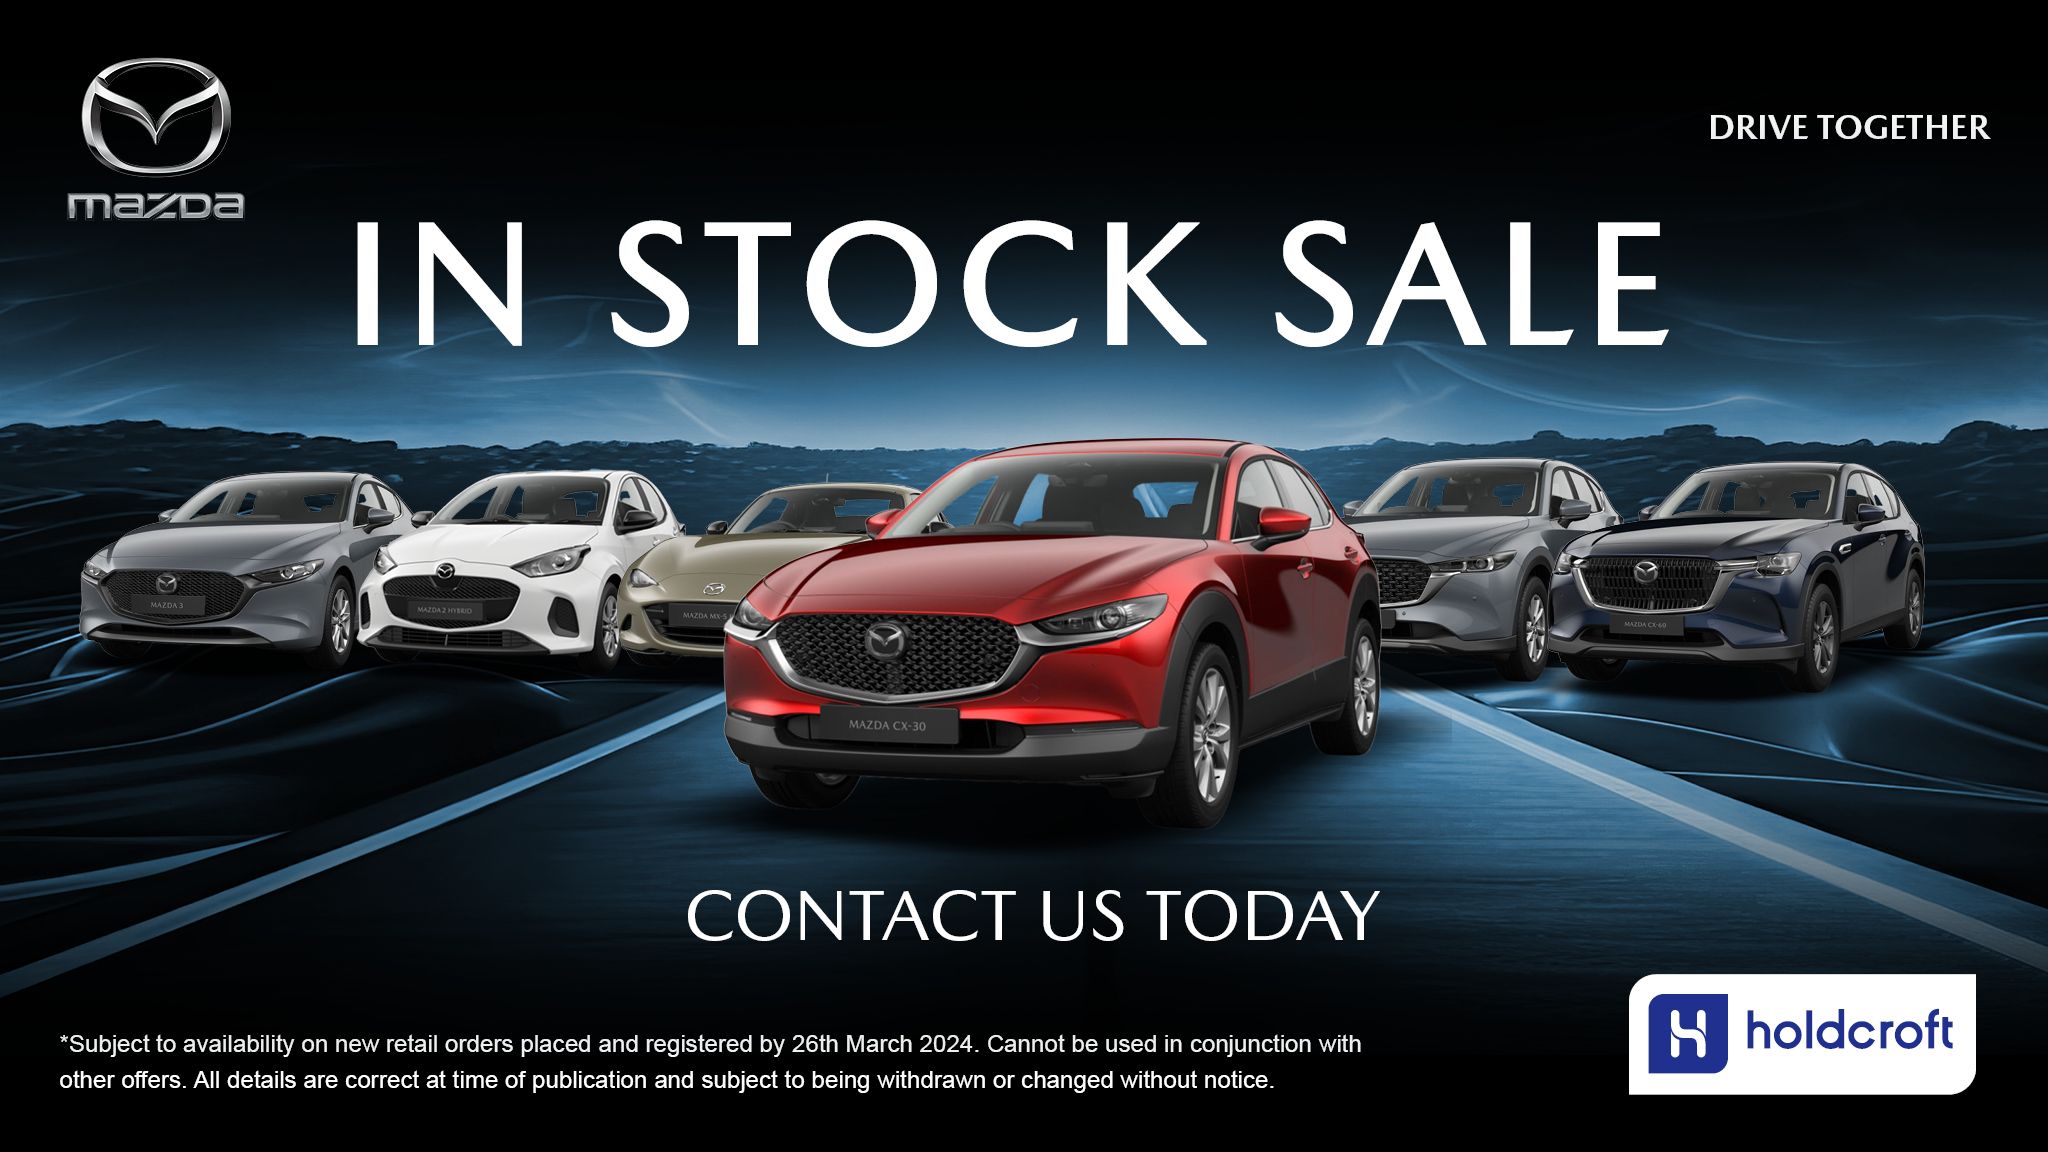 Mazda in Stock Sale